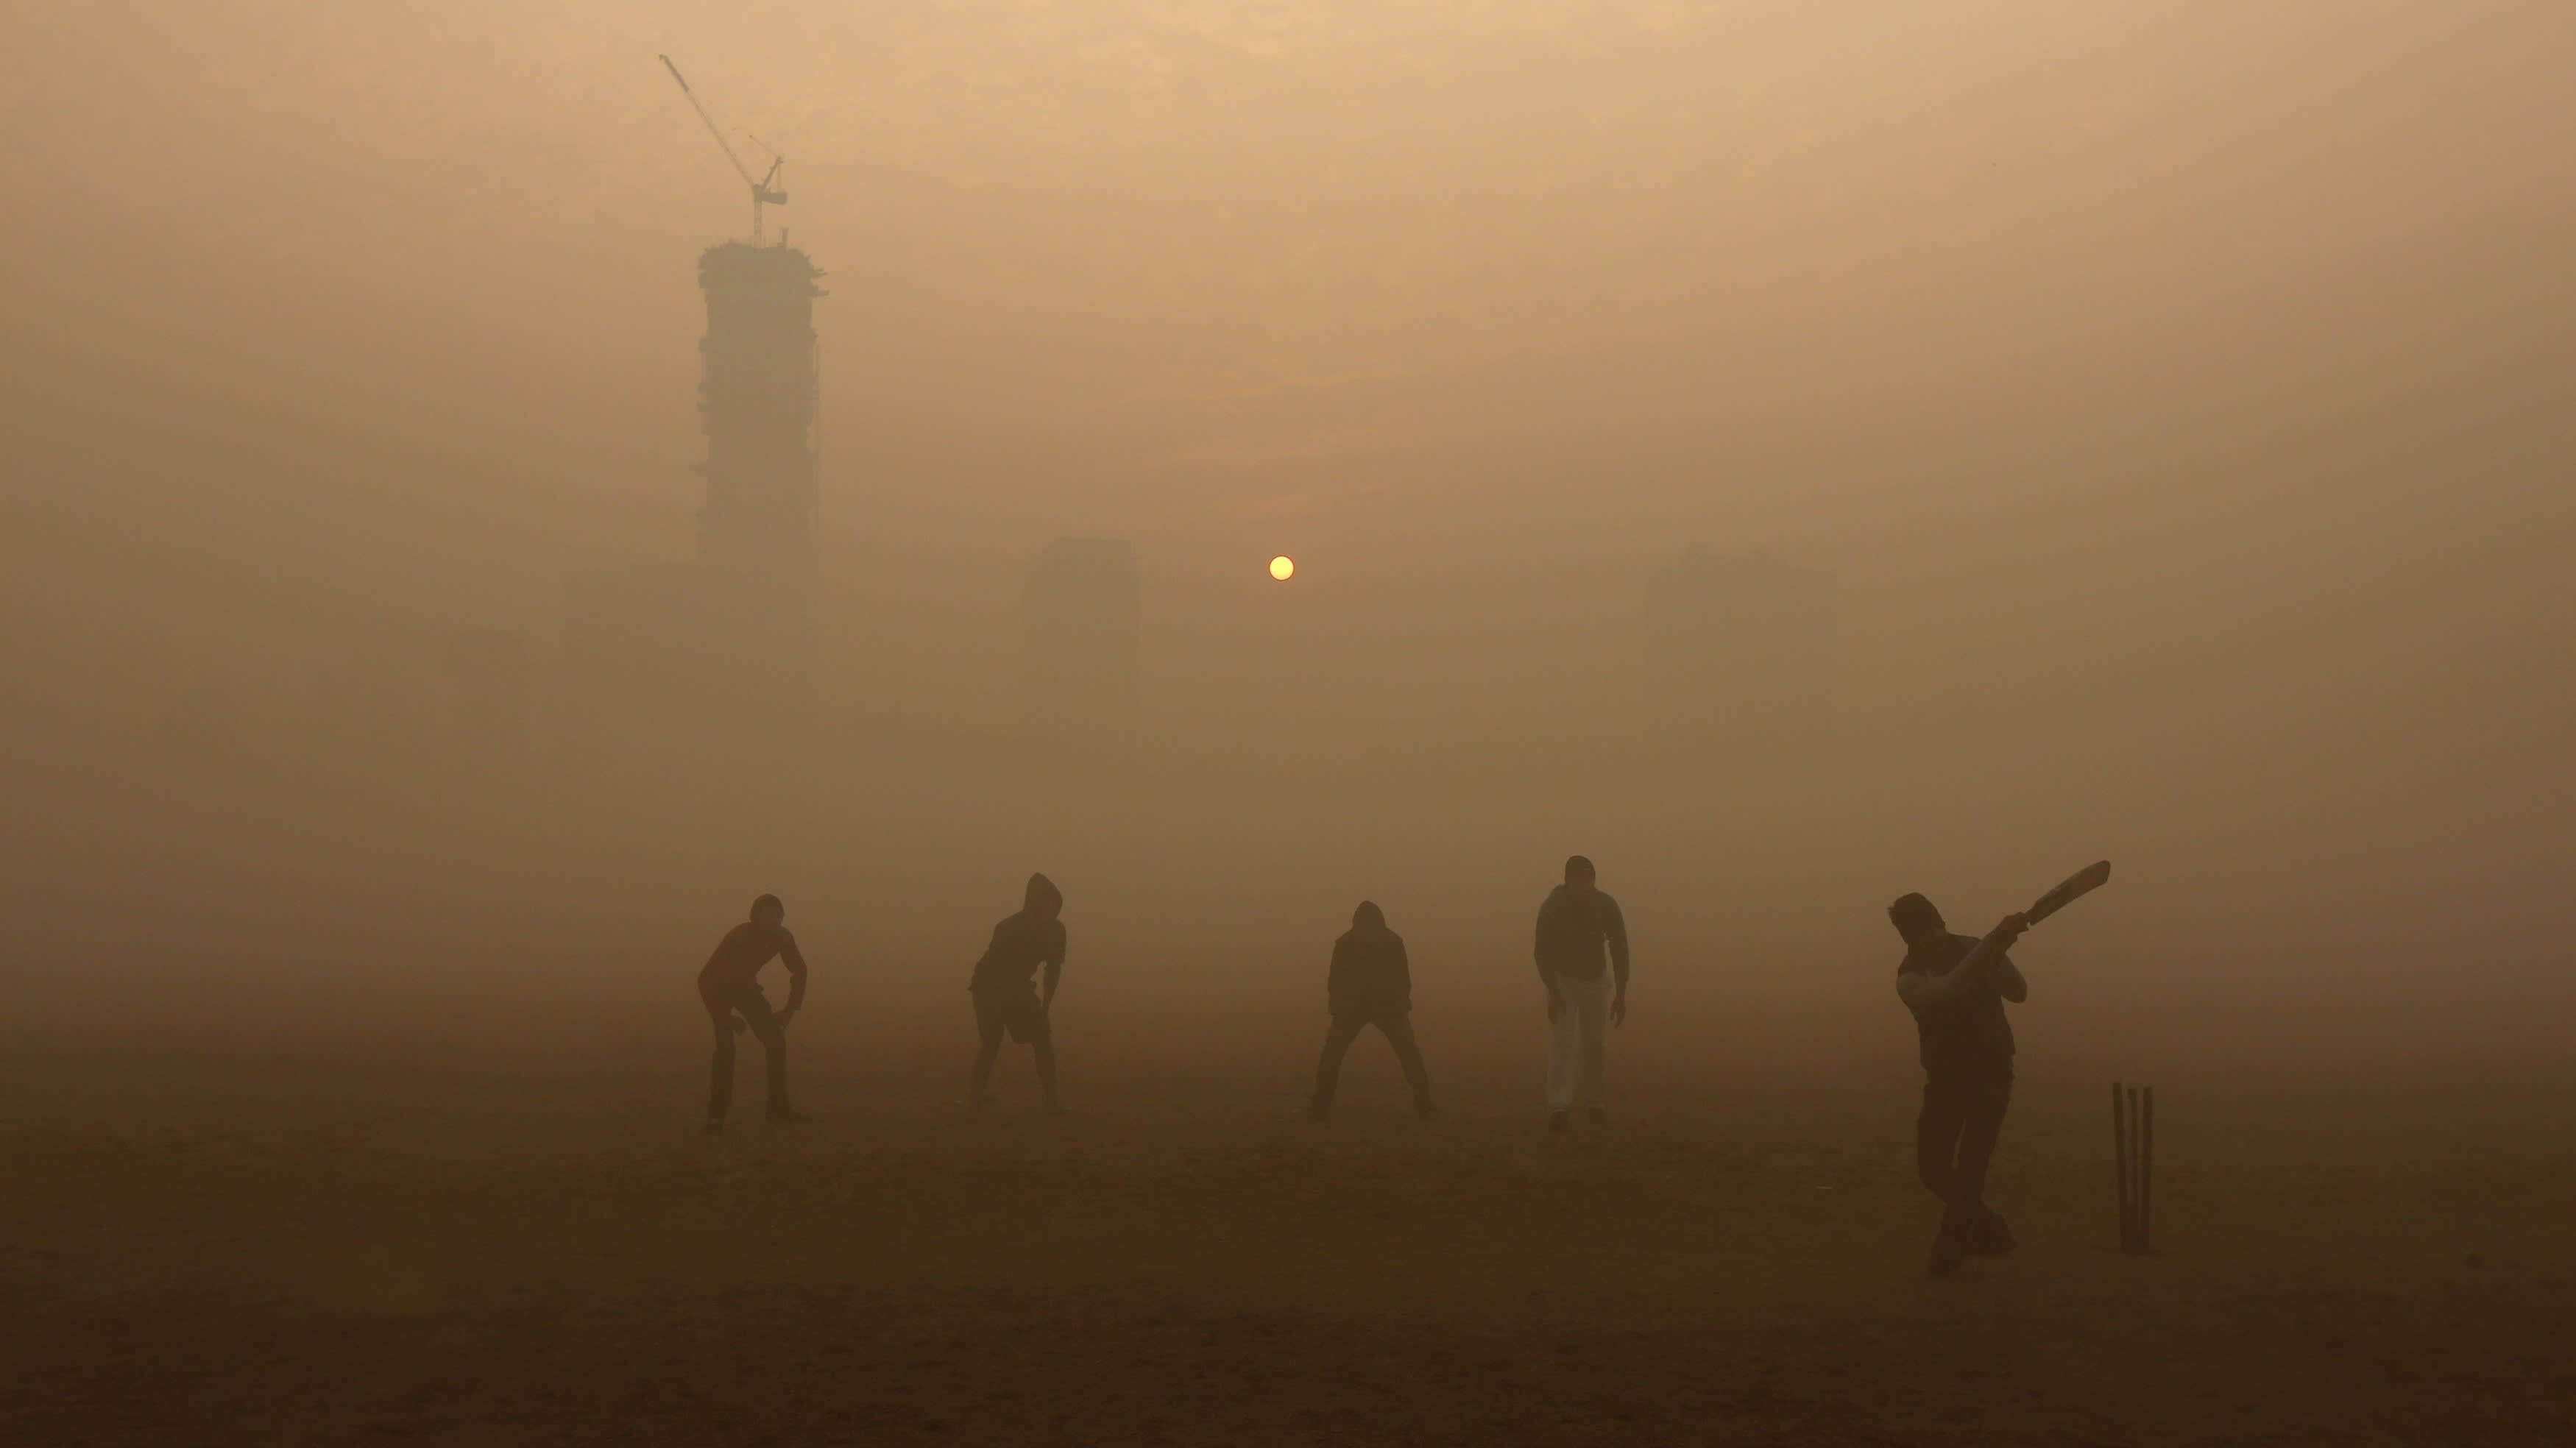 Luftverschmutzung — die Ursache des Anstiegs der Kriminalität